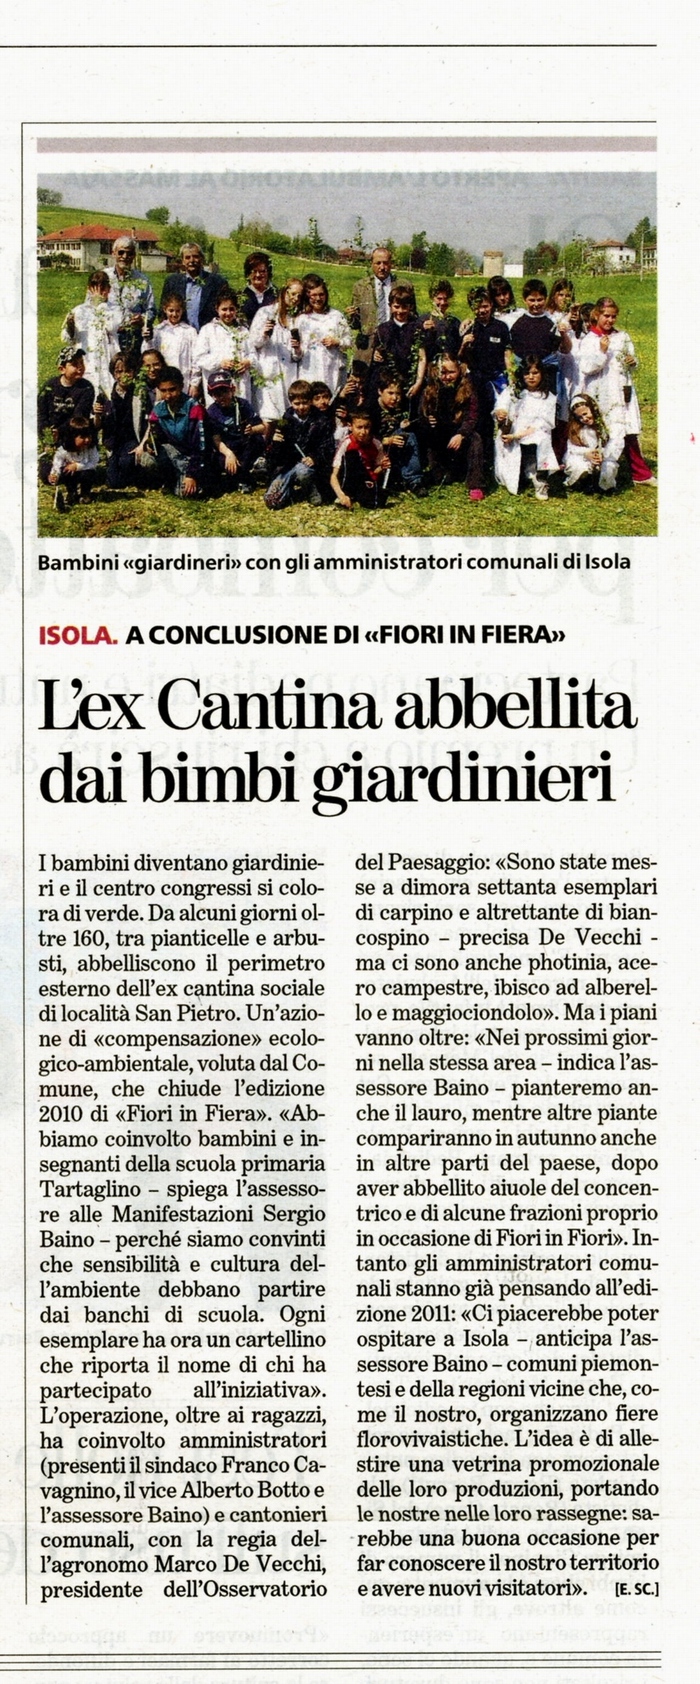 Rassegna stampa del piantamento con I bambini della Scuola elementare di Isola d'Asti di alberi presso il Centro Congressi - La Stampa (martedì 4 maggio 2010)